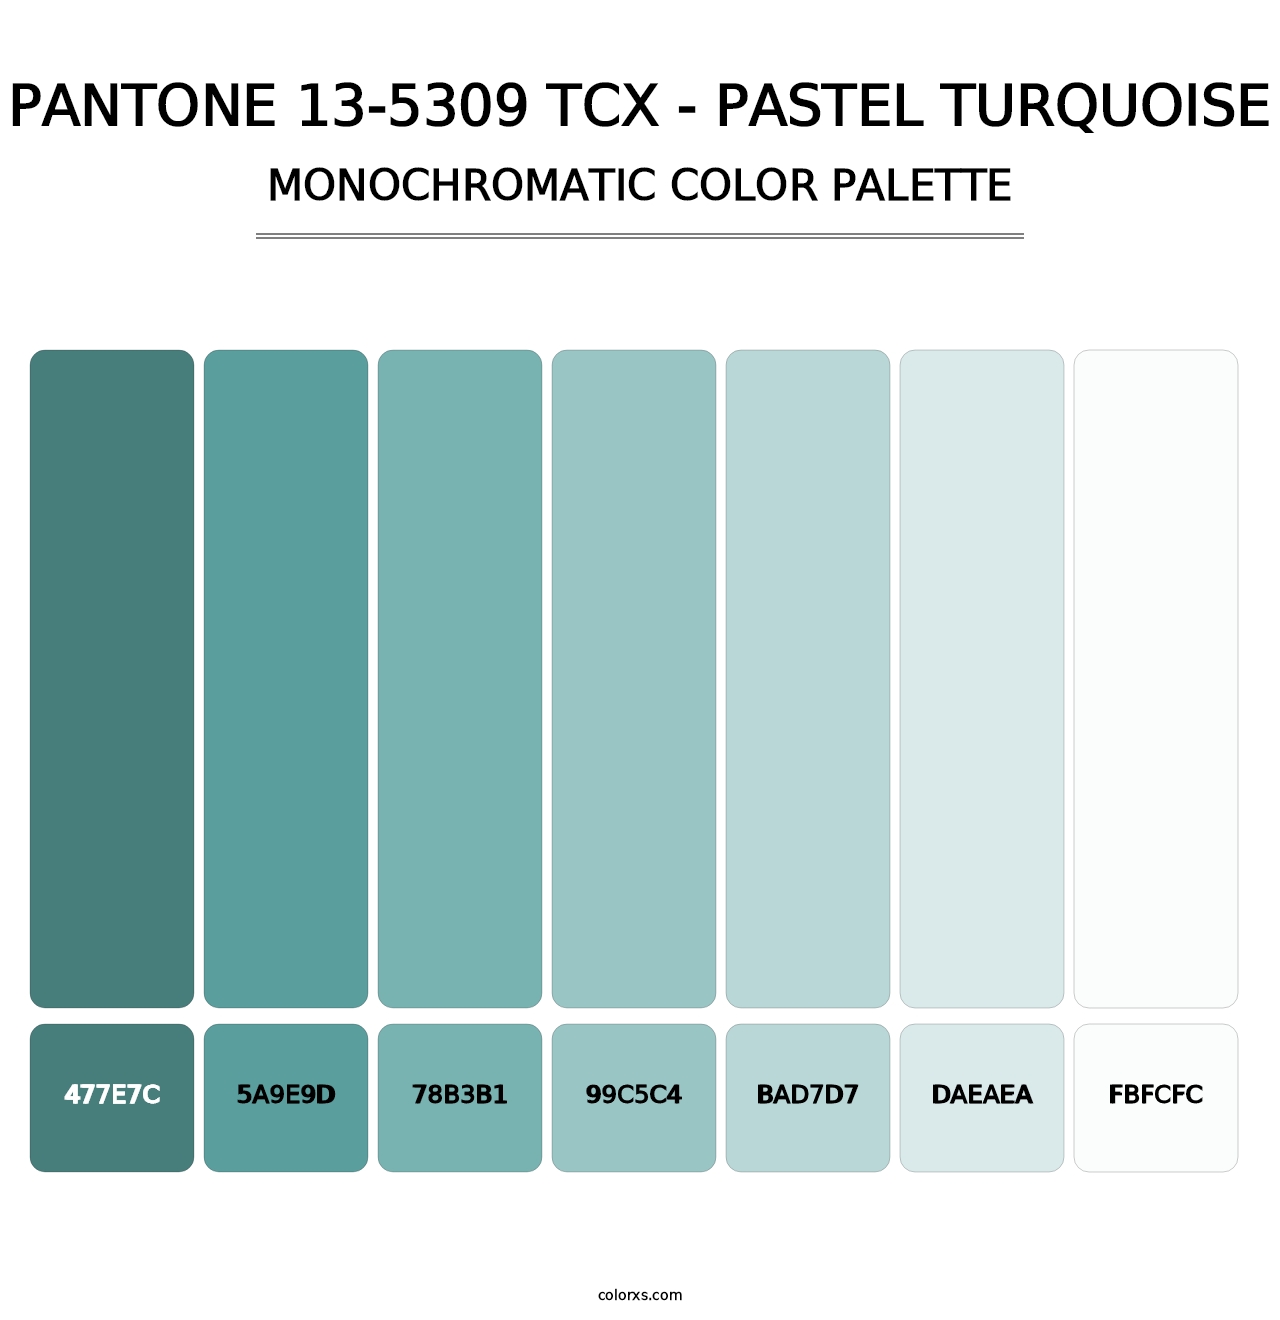 PANTONE 13-5309 TCX - Pastel Turquoise - Monochromatic Color Palette